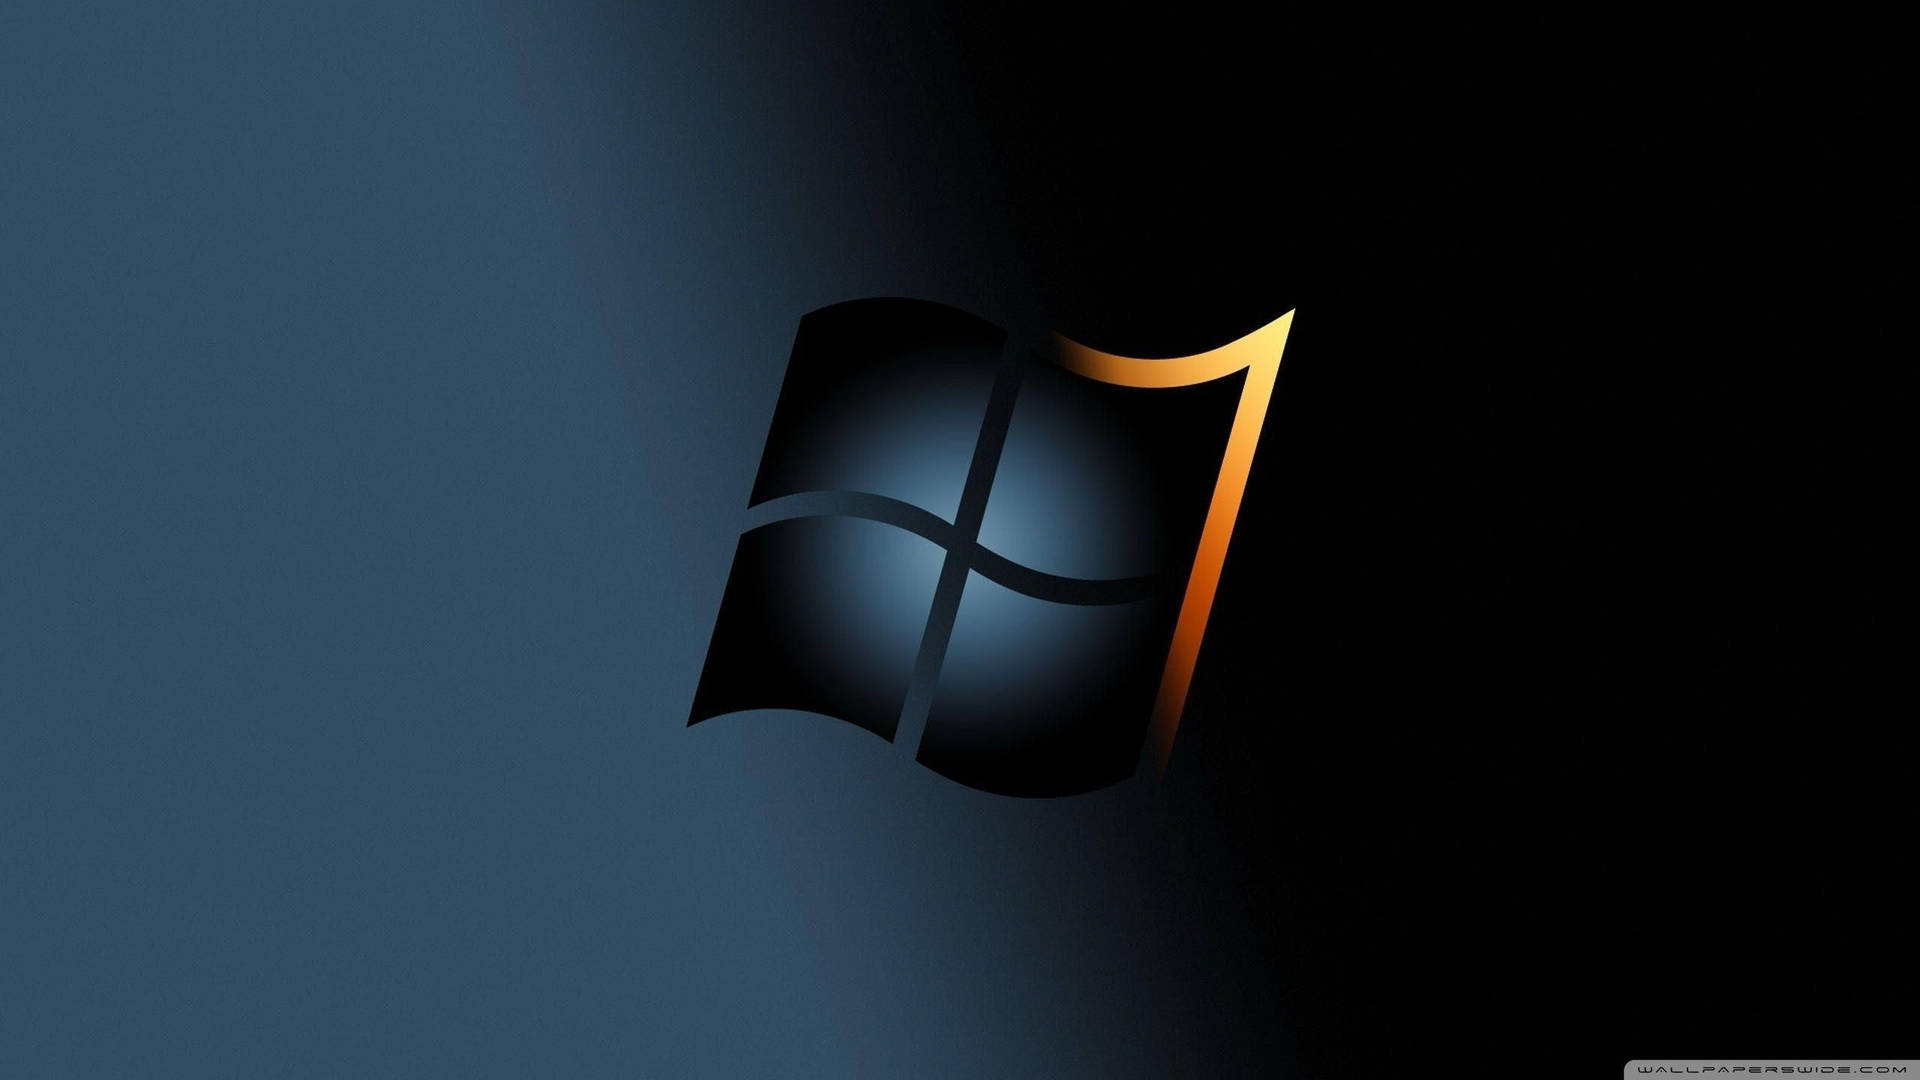 Papelde Parede Do Computador Ou Do Celular Com O Logotipo Preto Do Windows E Incrível. Papel de Parede